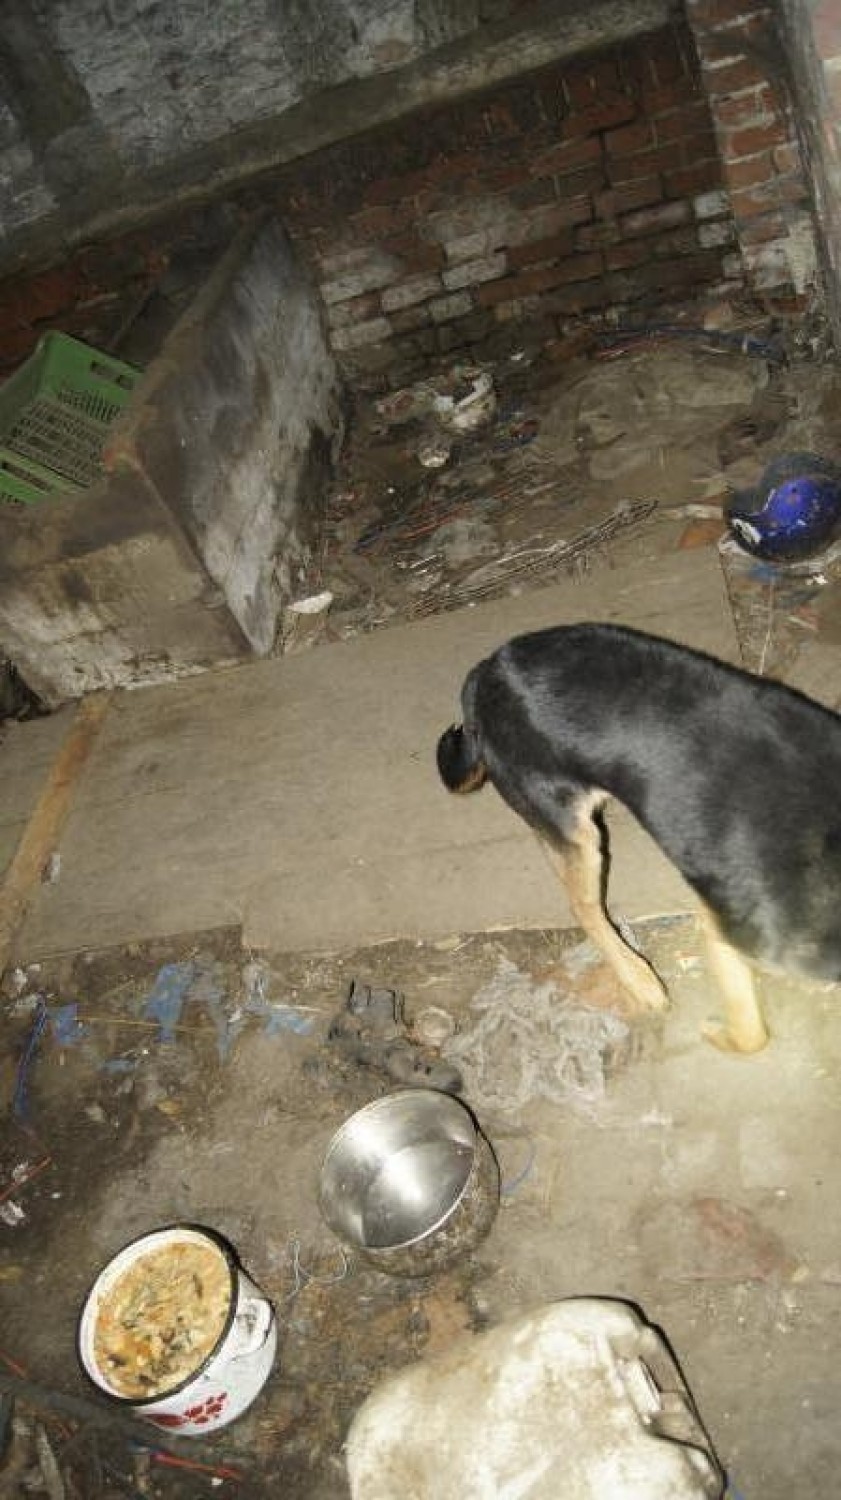 Na kilka lat zamknęli psa w piwnicy. Żył pośród śmieci i własnych odchodów [ZDJĘCIA]